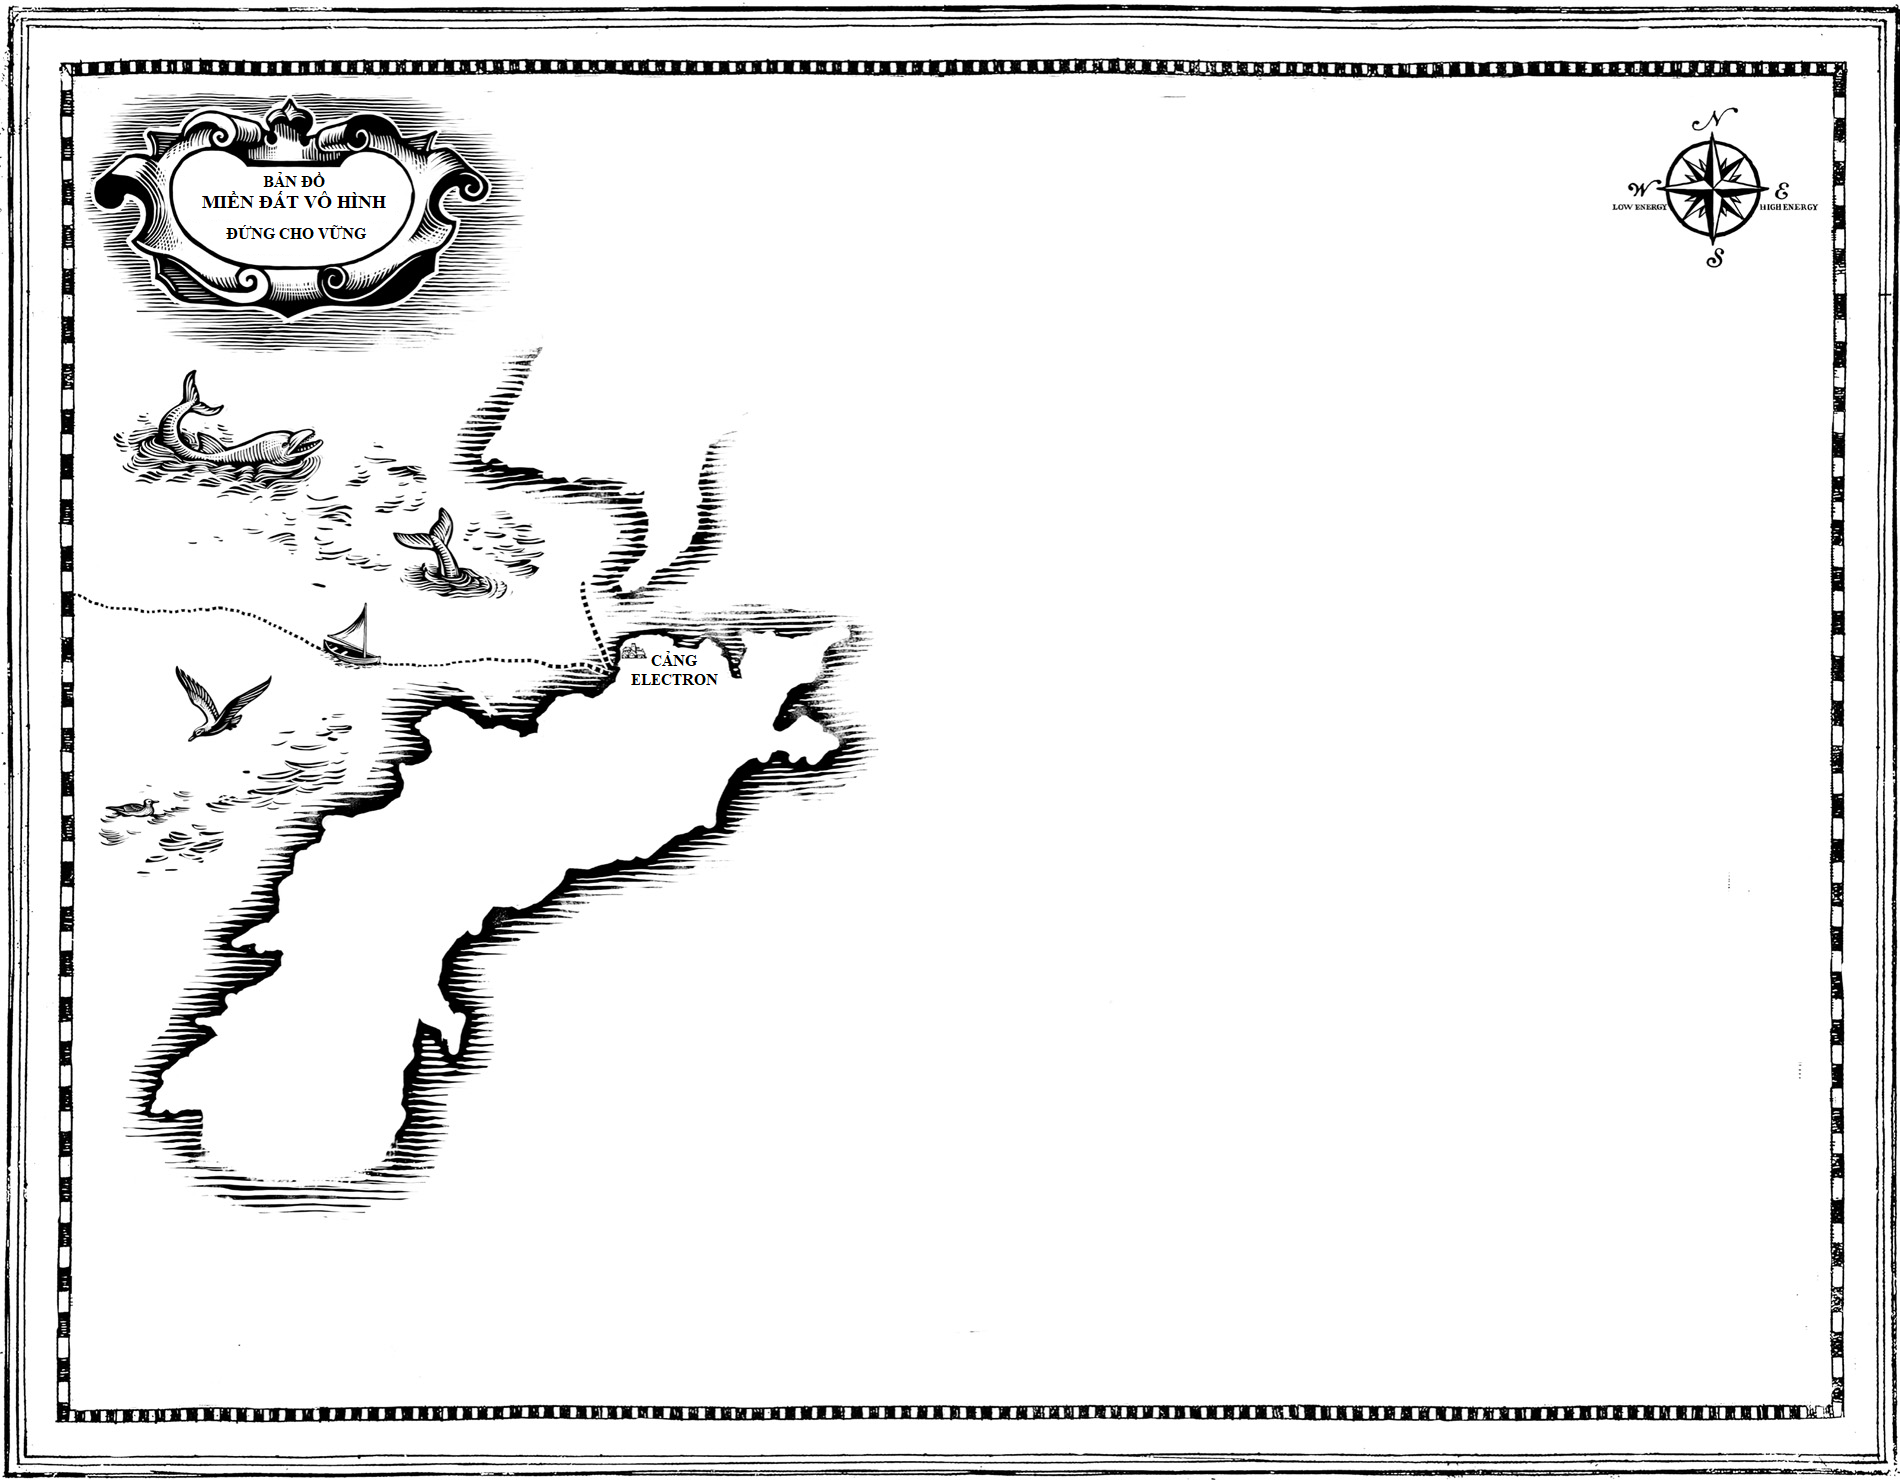 Bản đồ Miền đất Vô hình - Phần 1